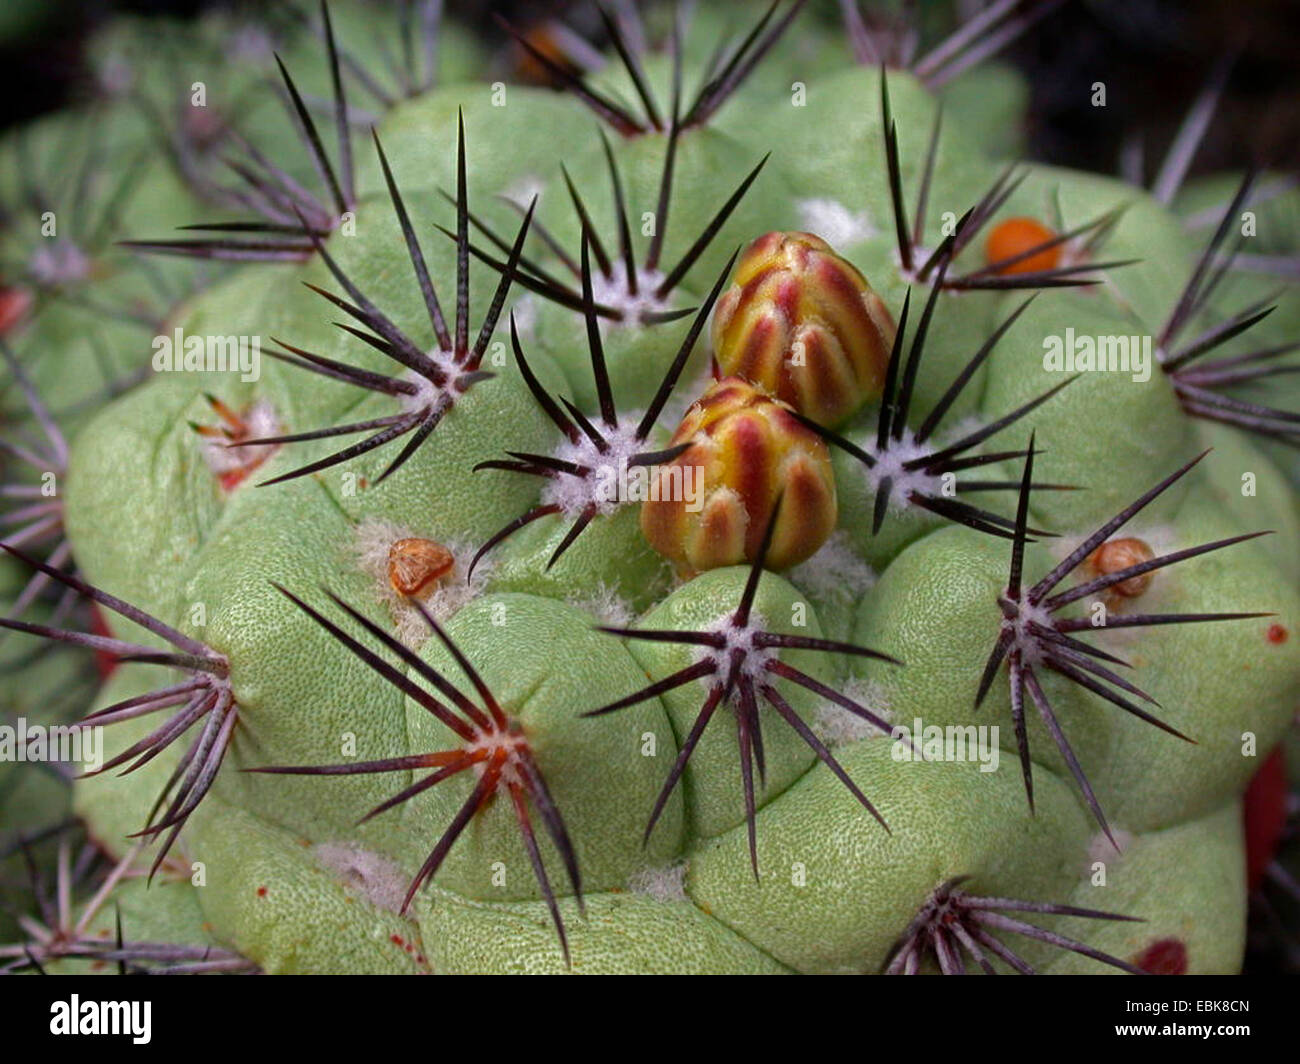 Ortegocactus (Ortegocactus macdougallii) Stock Photo